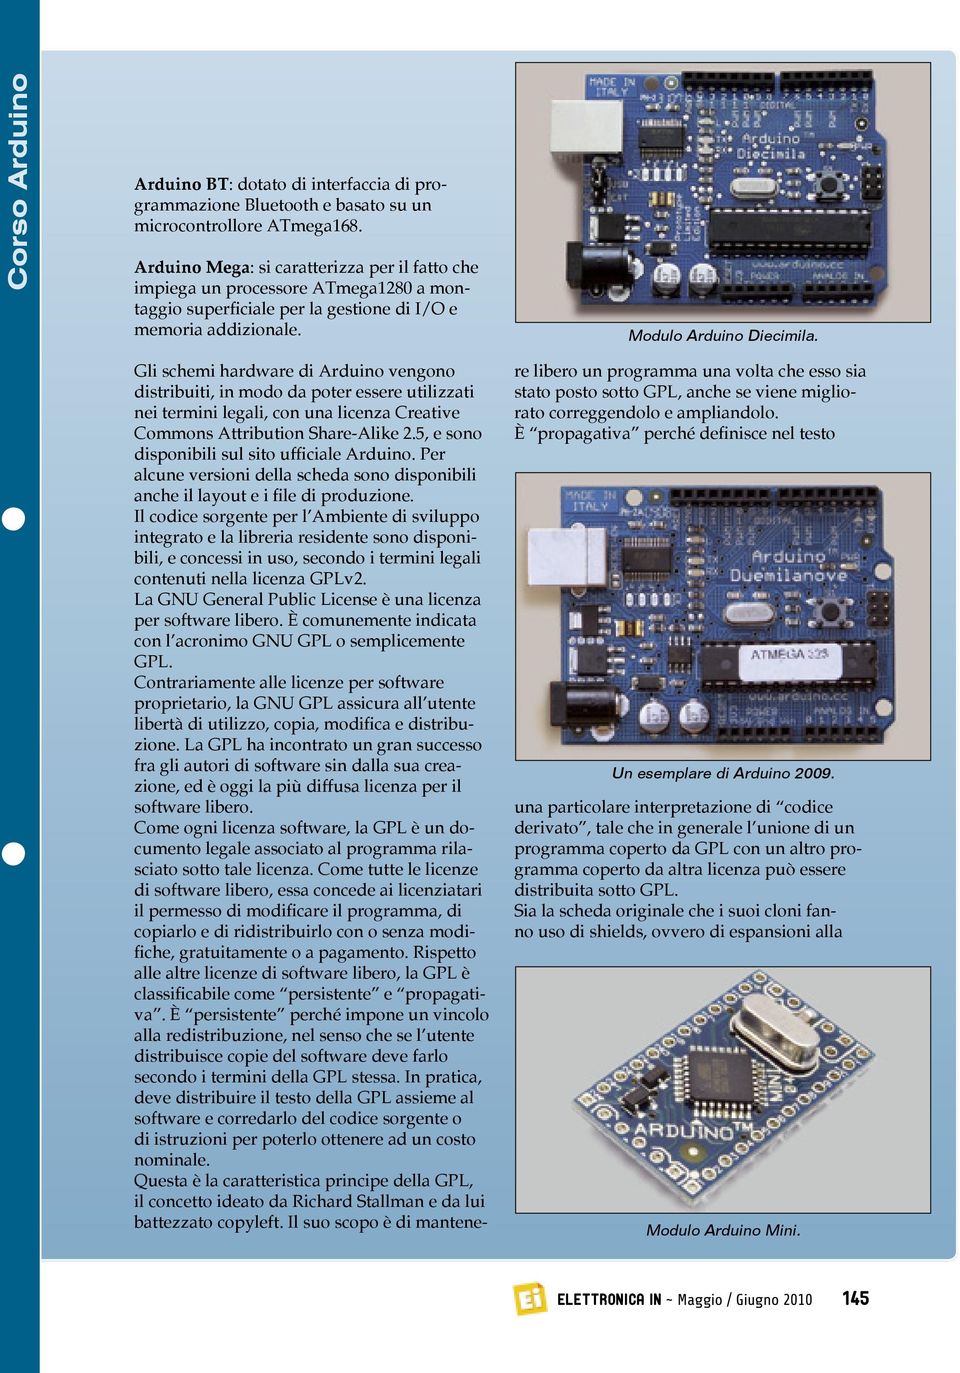 Gli schemi hardware di Arduino vengono distribuiti, in modo da poter essere utilizzati nei termini legali, con una licenza Creative Commons Attribution Share-Alike 2.